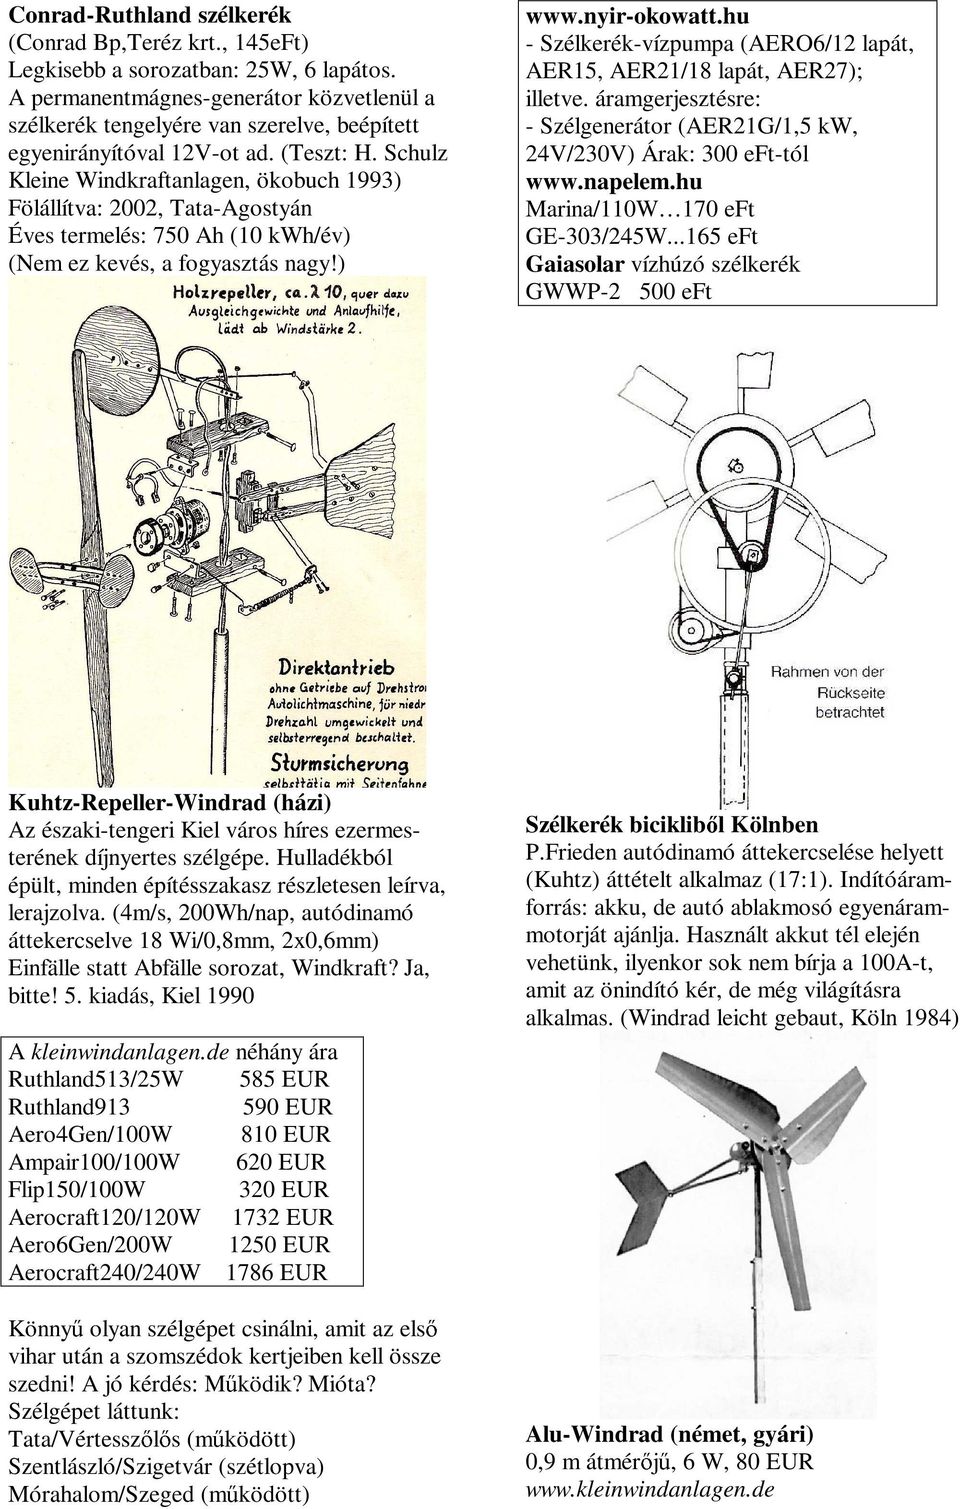 Schulz Kleine Windkraftanlagen, ökobuch 1993) Fölállítva: 2002, Tata-Agostyán Éves termelés: 750 Ah (10 kwh/év) (Nem ez kevés, a fogyasztás nagy!) www.nyir-okowatt.